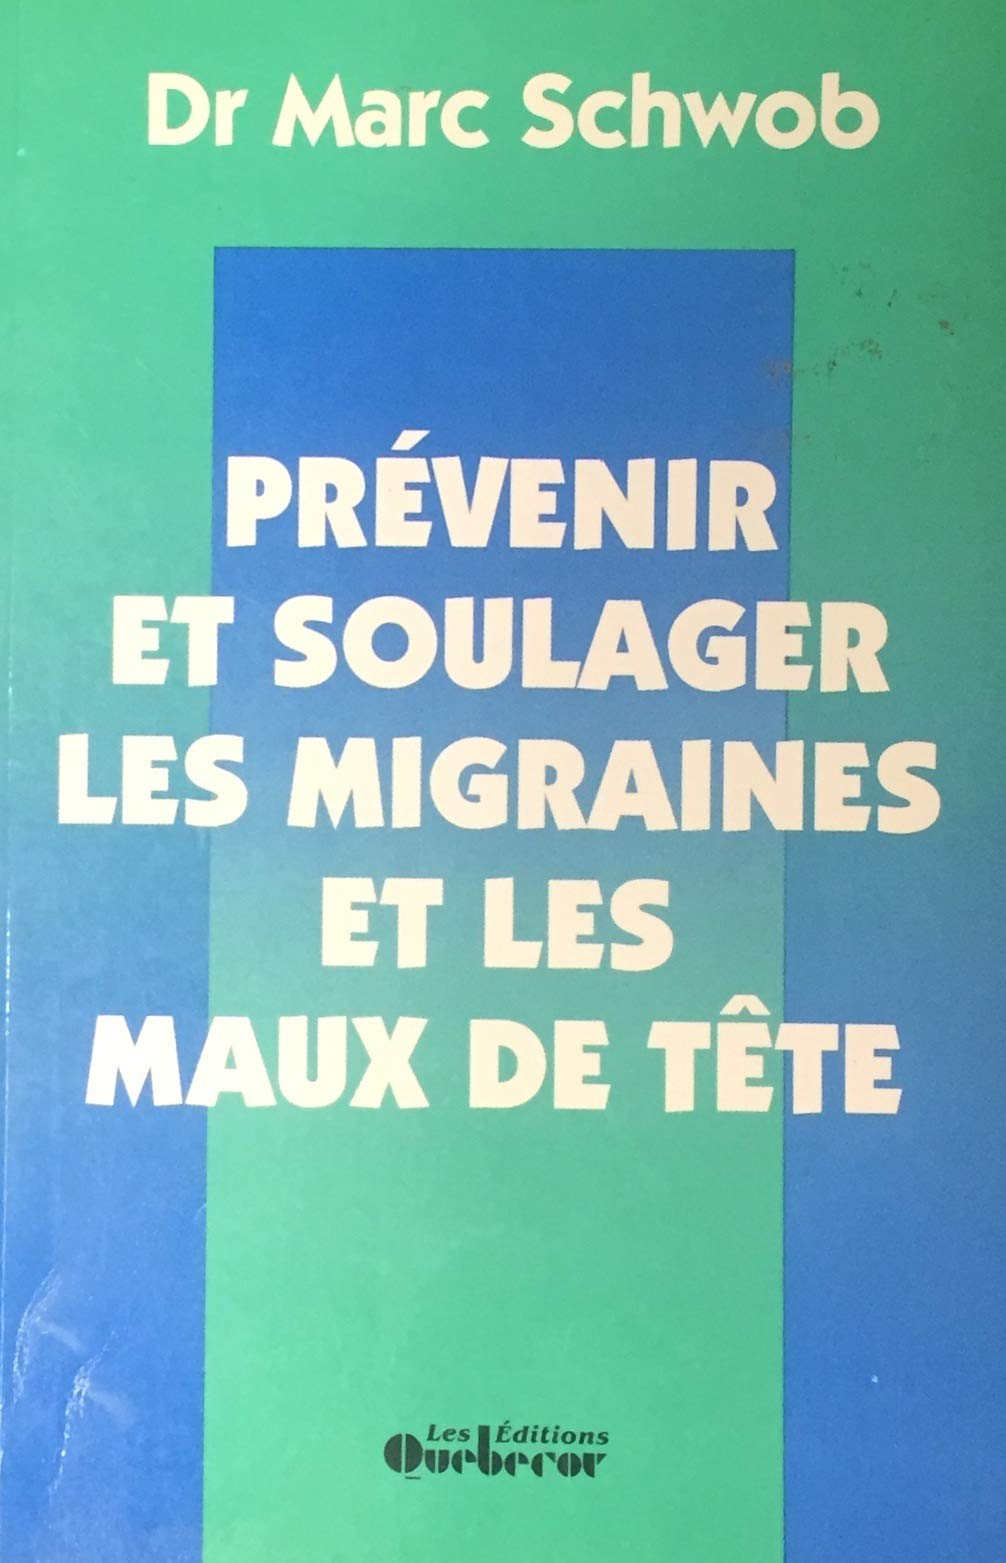 Livre ISBN 2890897834 Prévenir et soulager les migraines et les maux de têtes (Dr Marc Schwob)